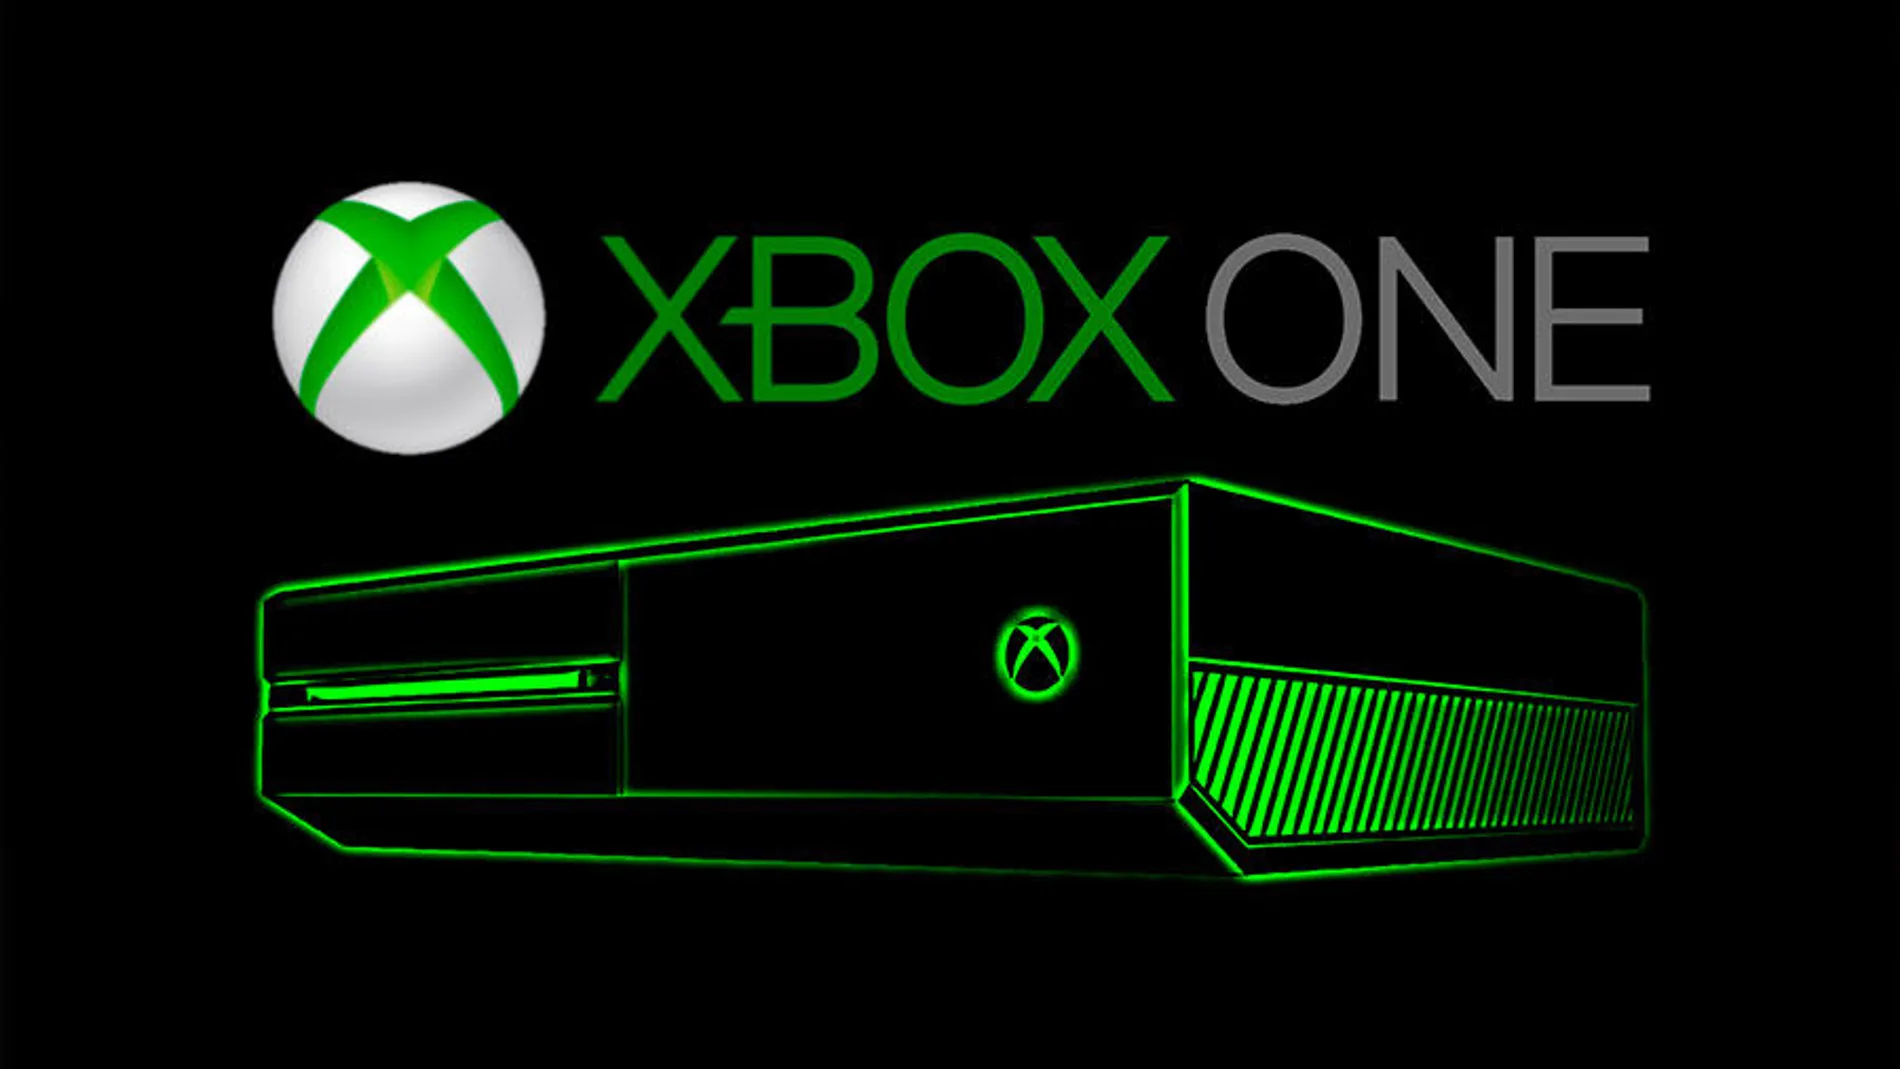 La retrocompatibilidad se hace realidad en Xbox One